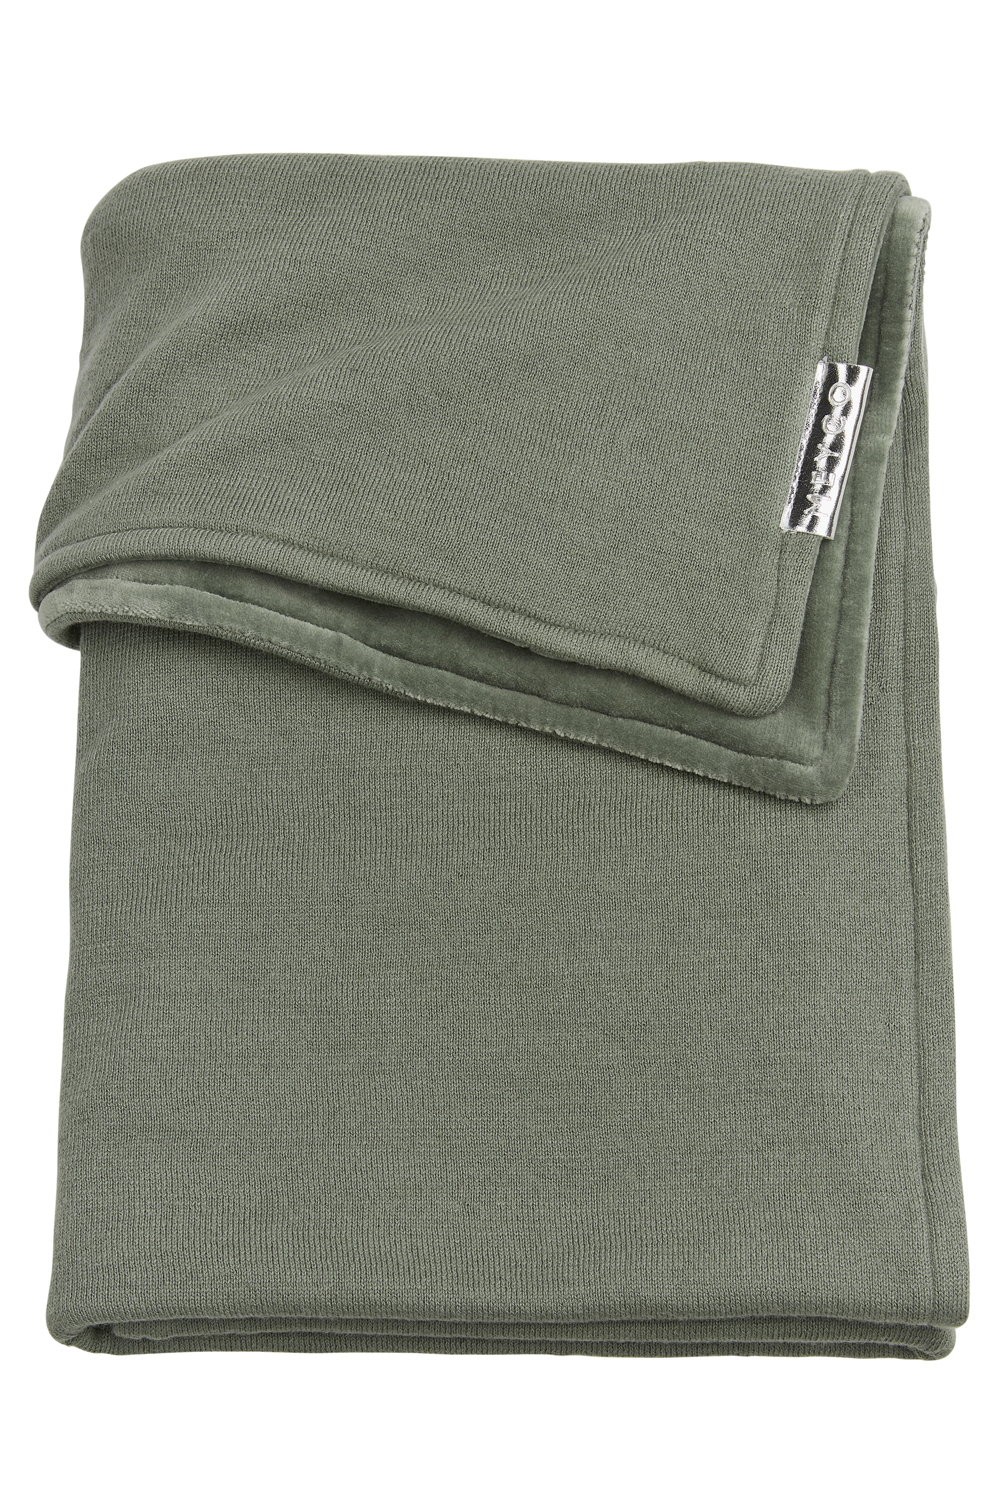 Ledikantdeken Velvet Knit Basic - Forest Green - 100x150cm